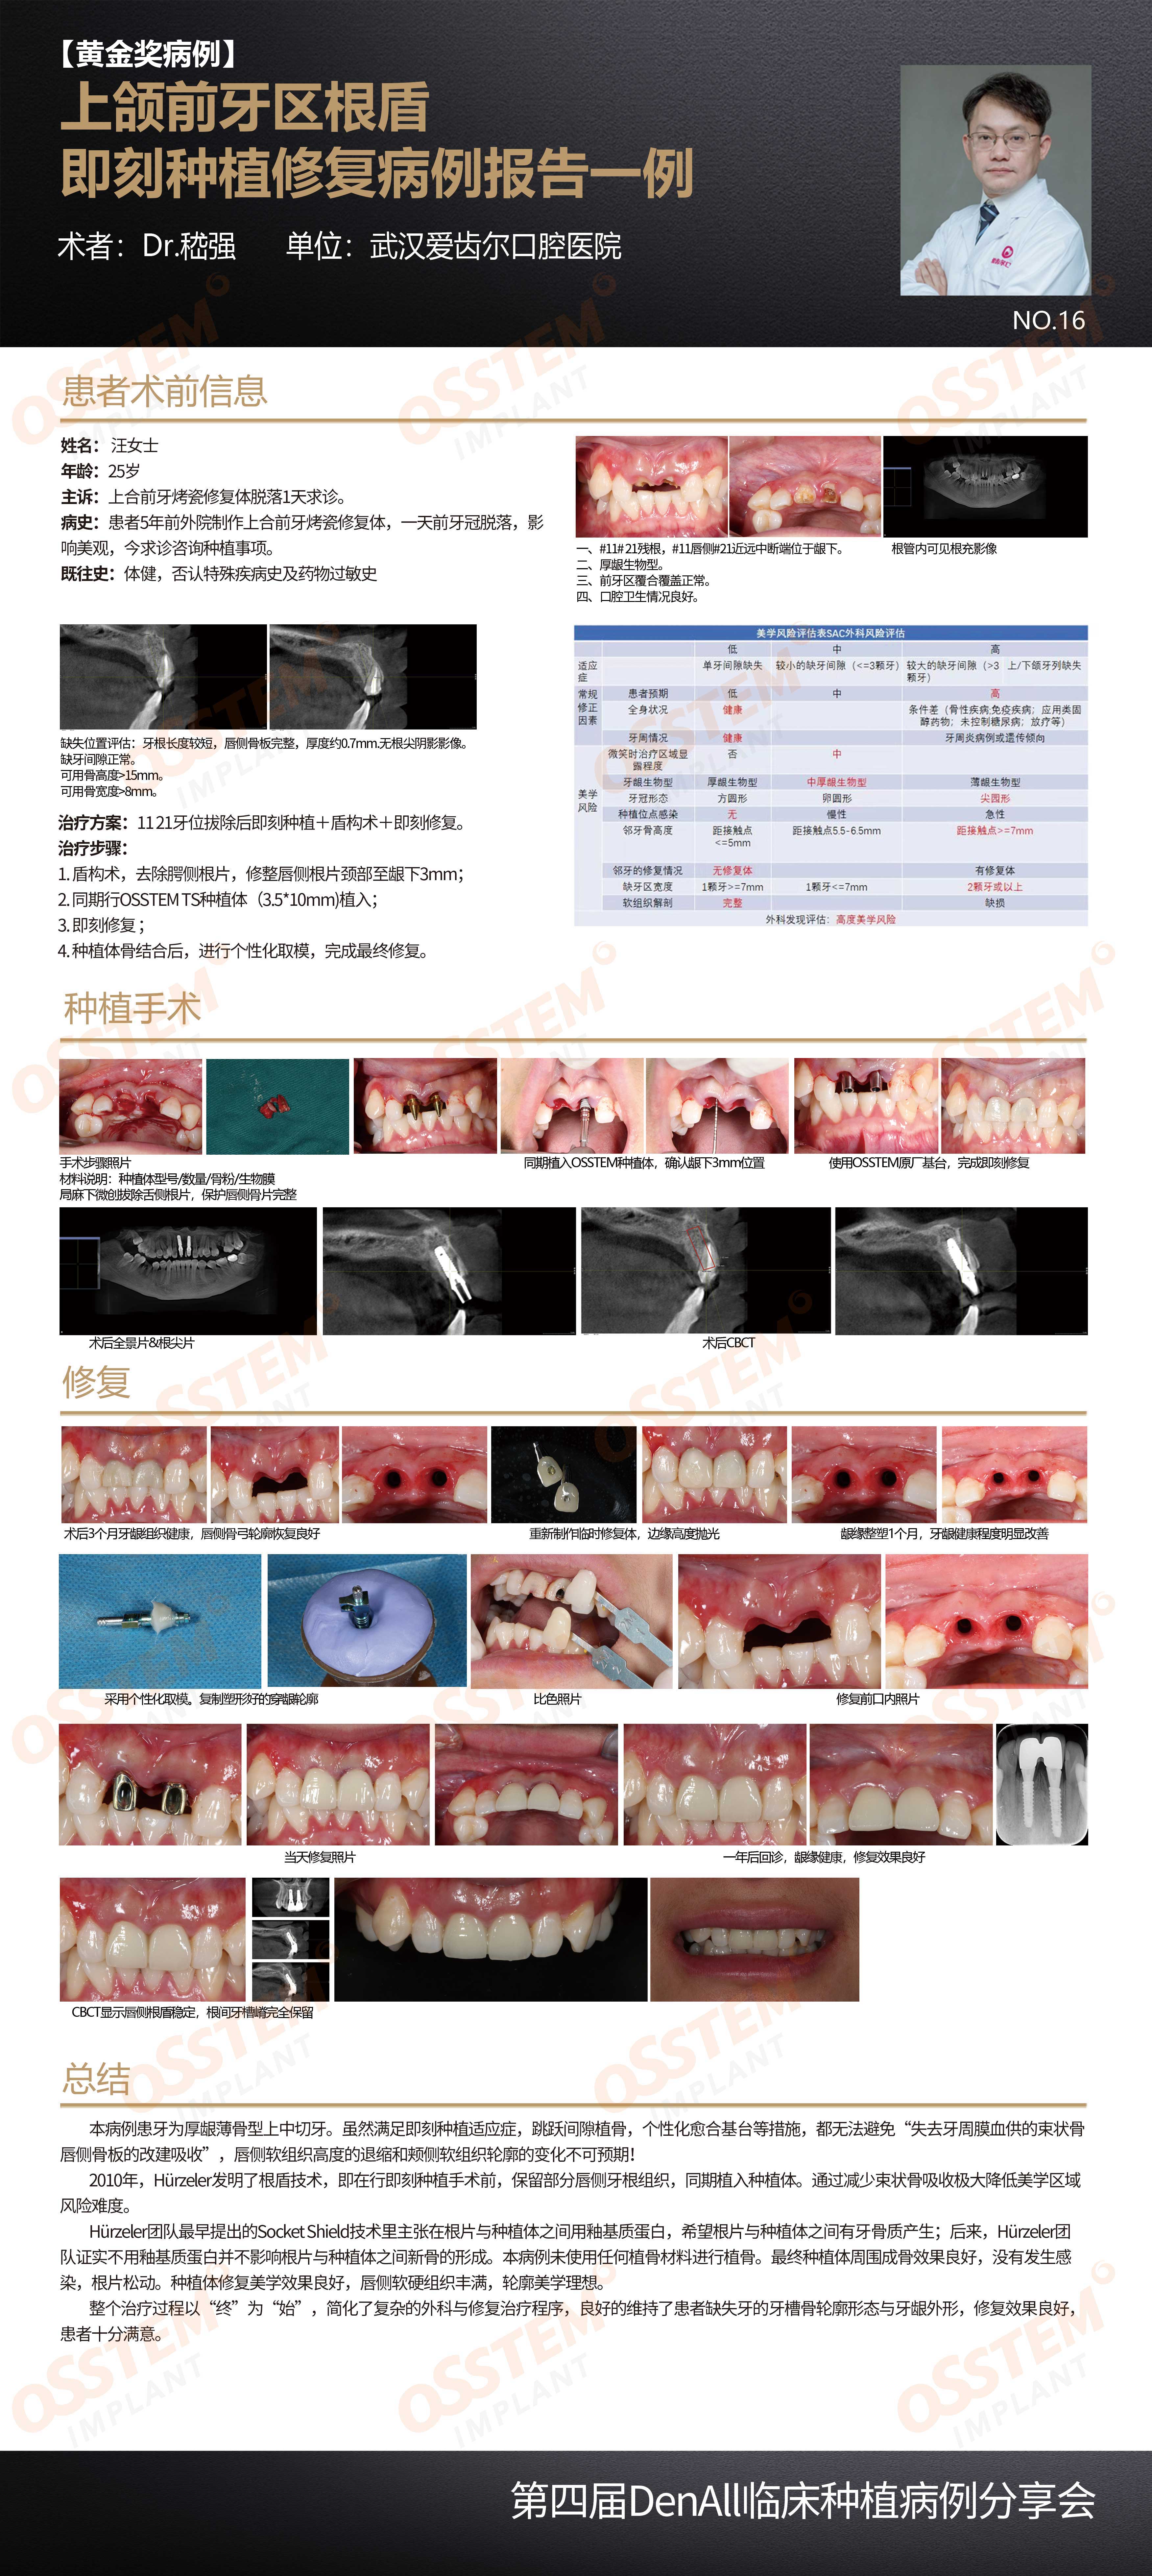 16-上颌前牙区根盾即刻种植修复病例报告一例-嵇强.jpg